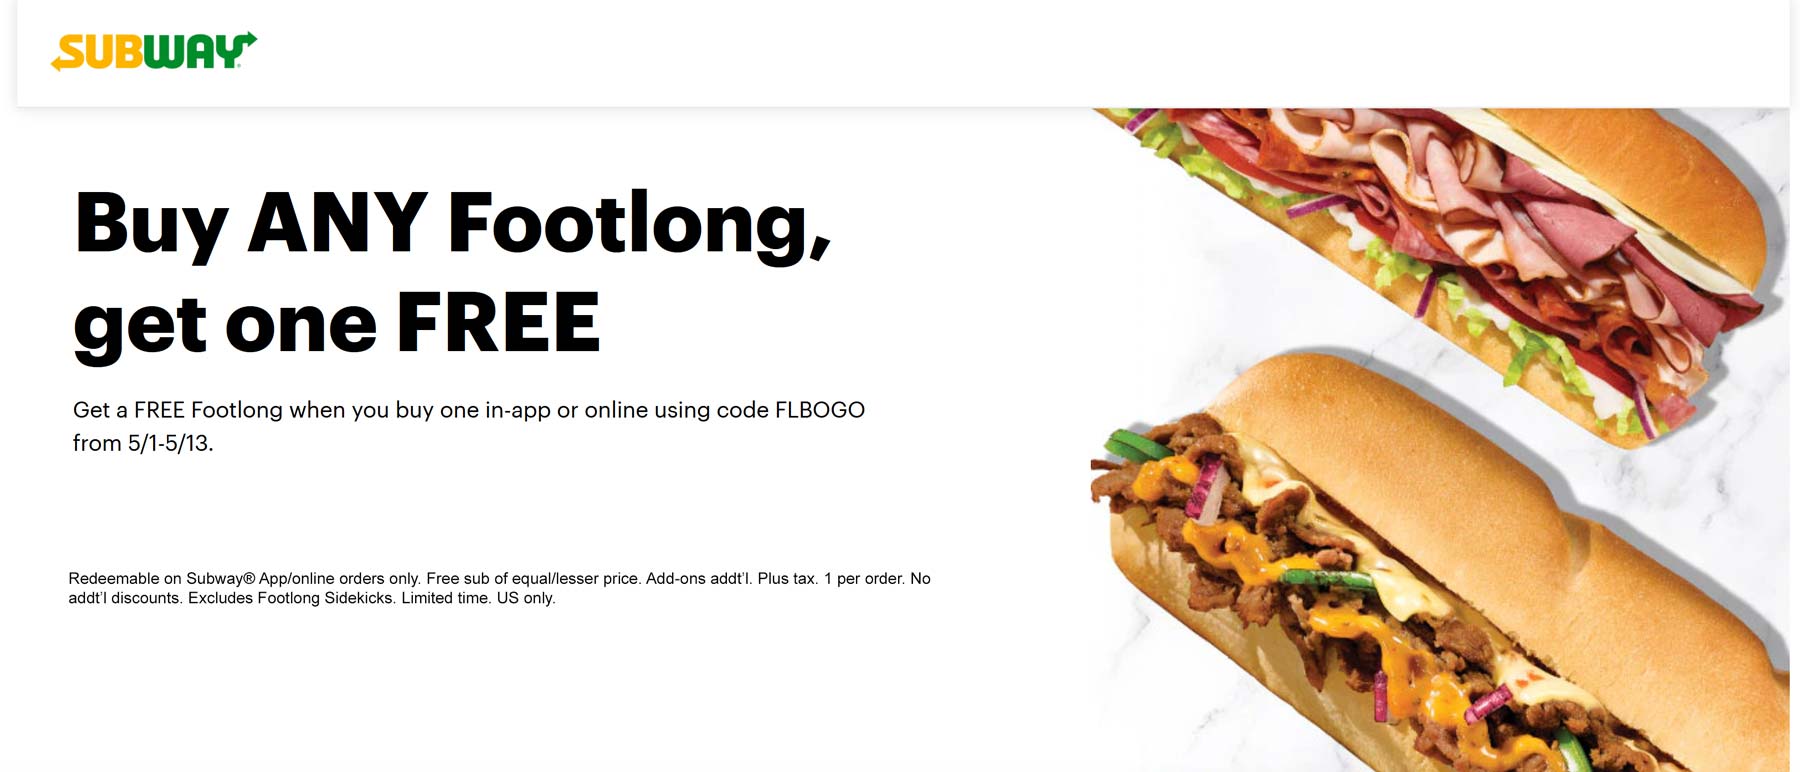 Subway restaurants Coupon  Second footlong sandwich free at Subway via promo code FLBOGO #subway 